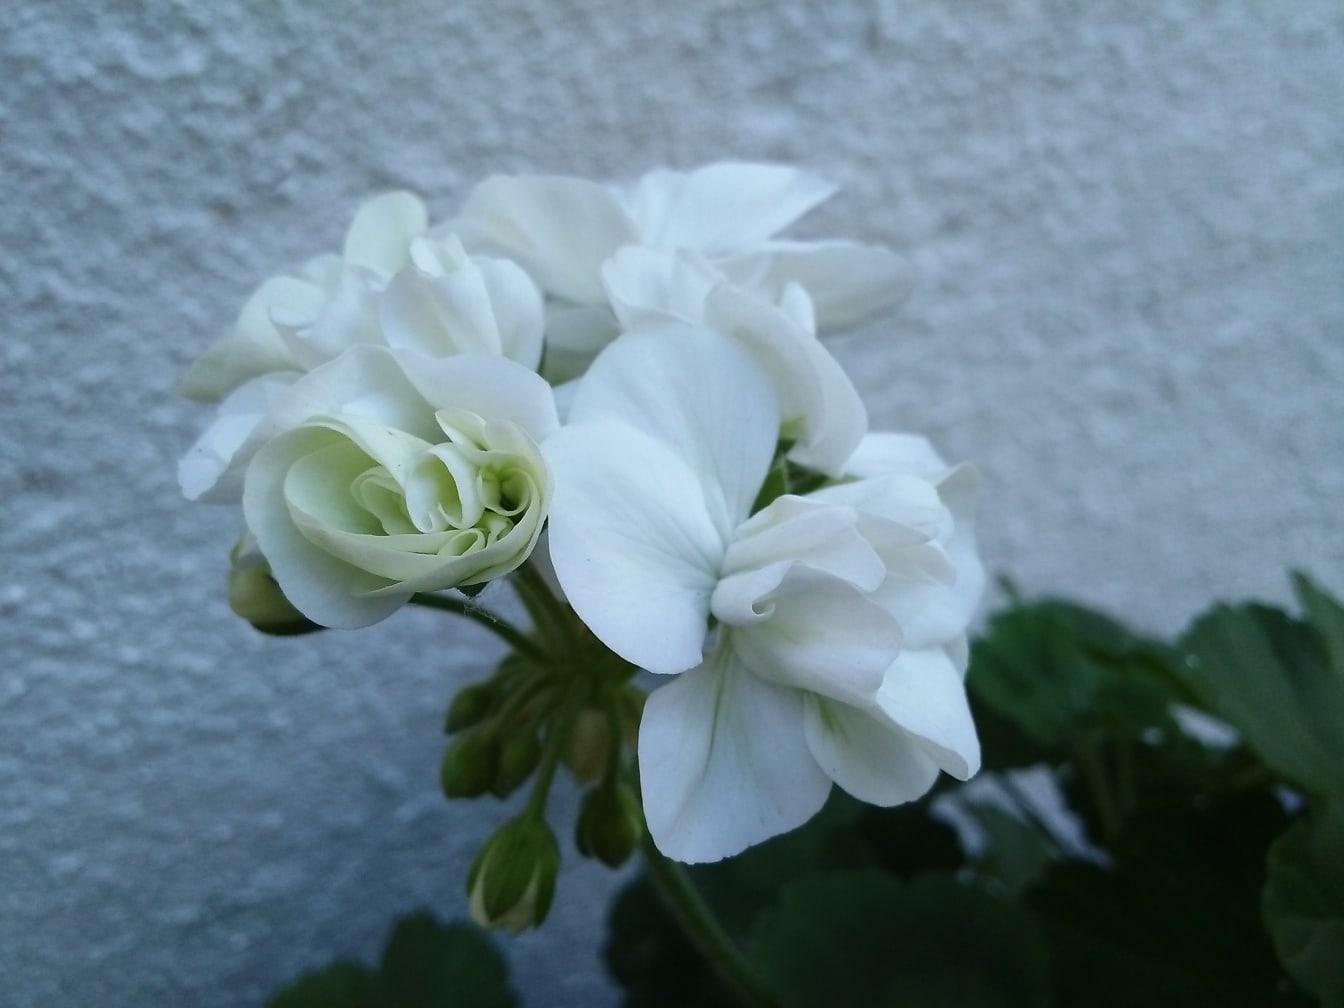 Saf beyaz bir sardunya çiçeği (Pelargonium hortorum)